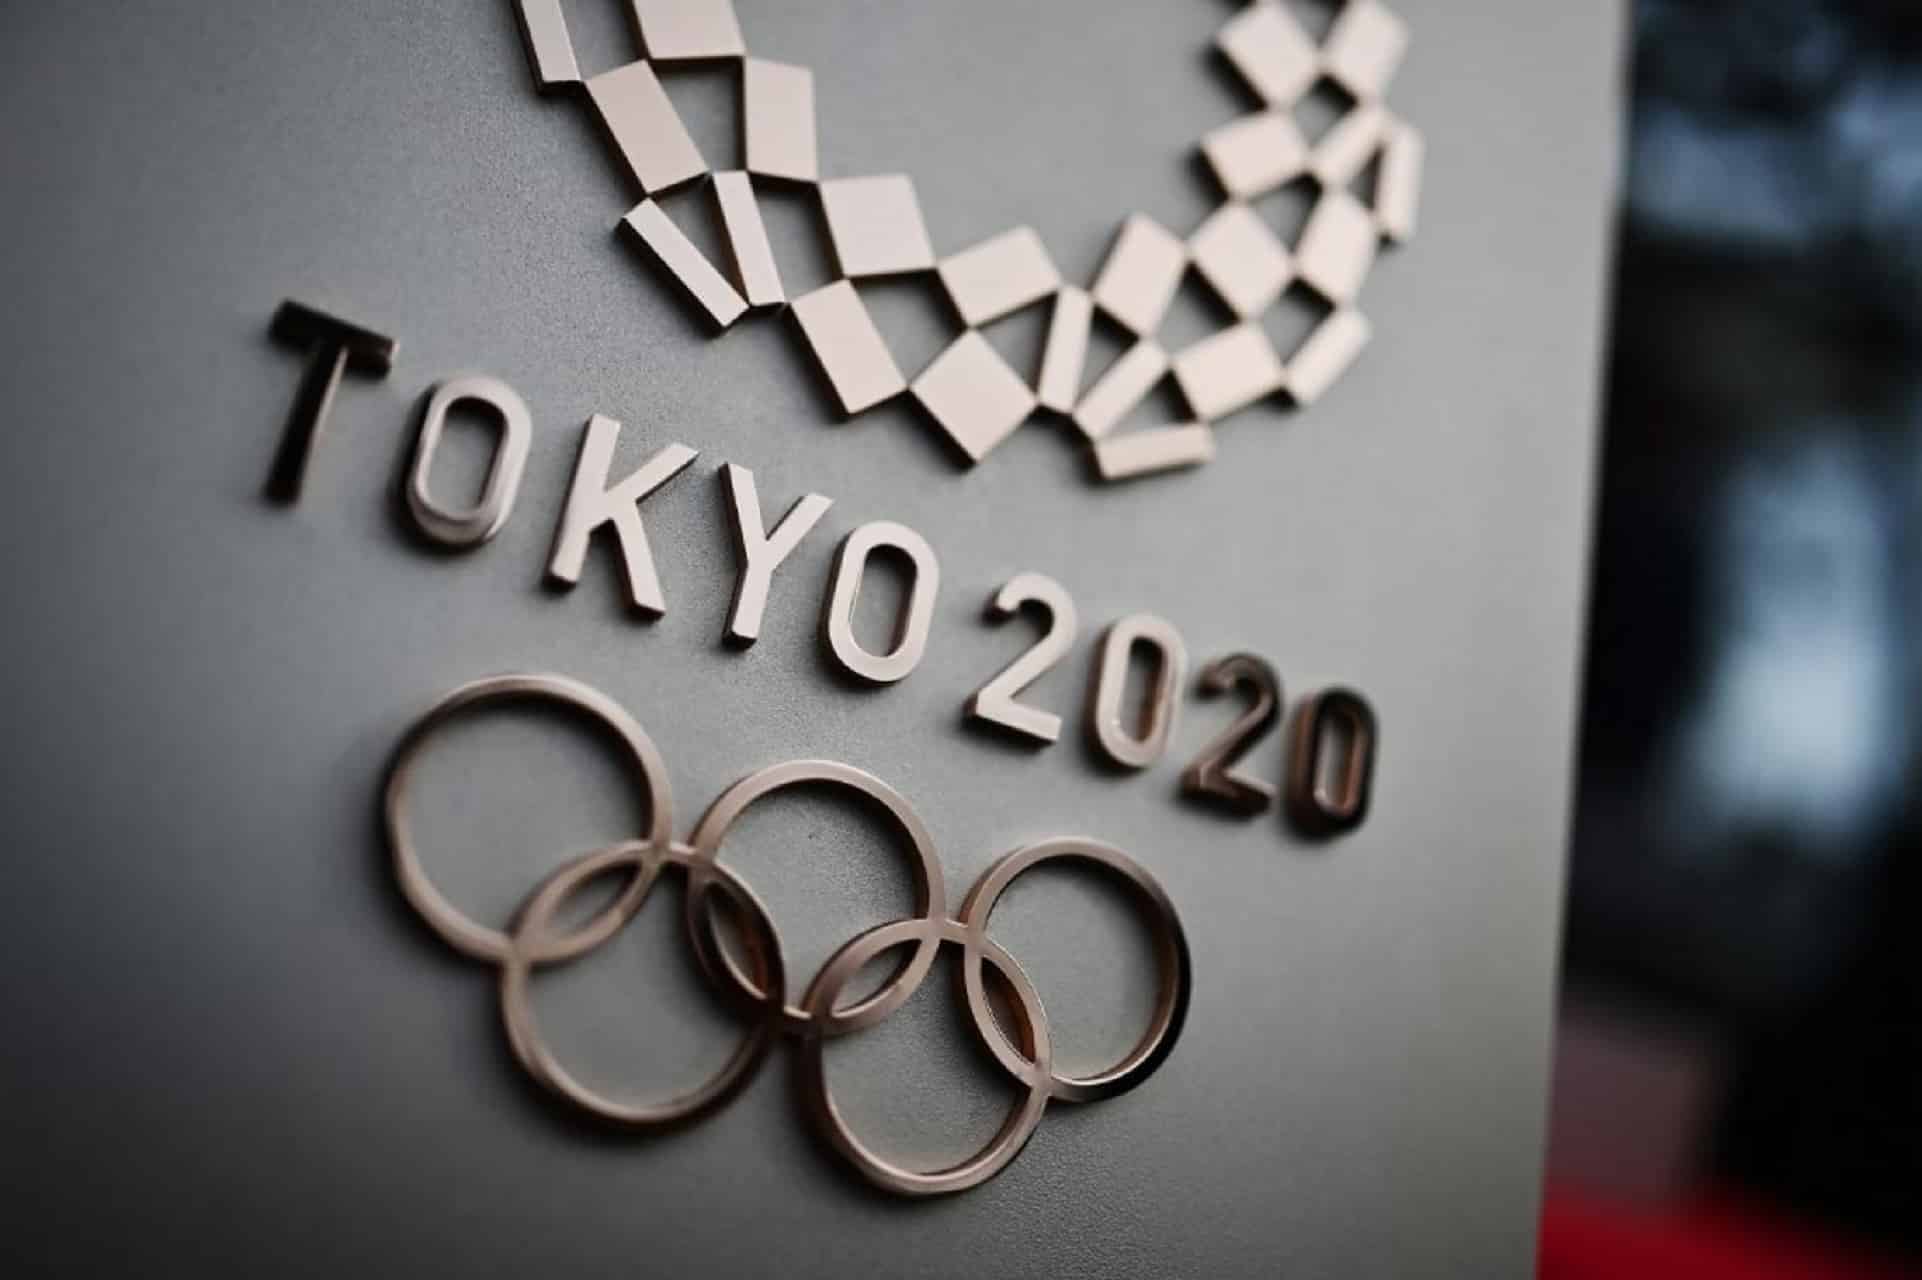 سامارانتش: لن يتم إلغاء أولمبياد طوكيو تحت أي ظرف